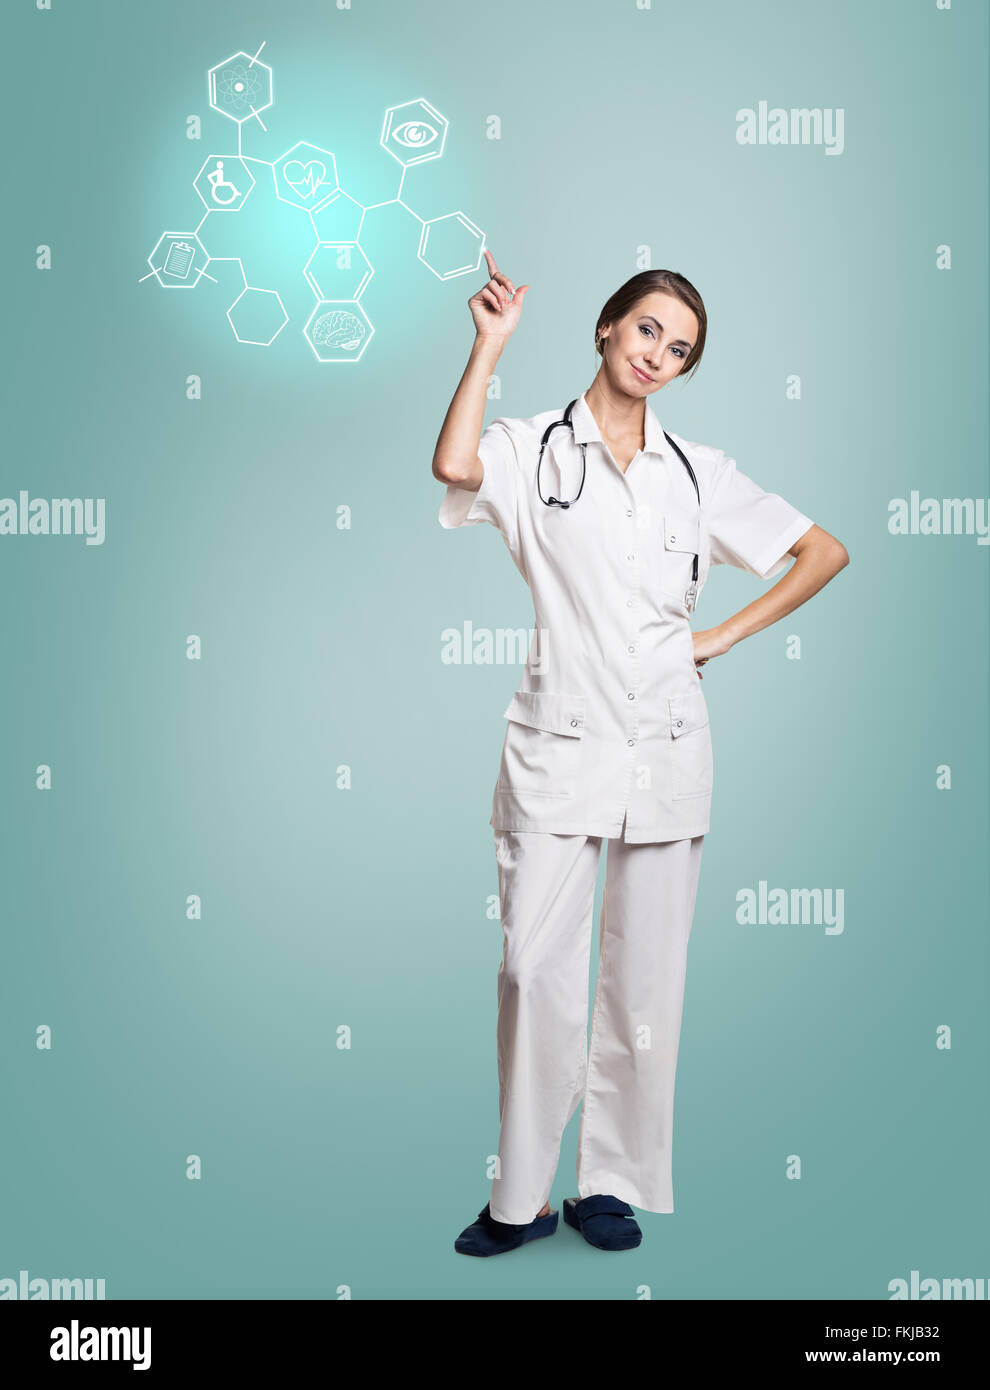 Femme médecin en uniforme avec des icônes hexagonales tactile Banque D'Images